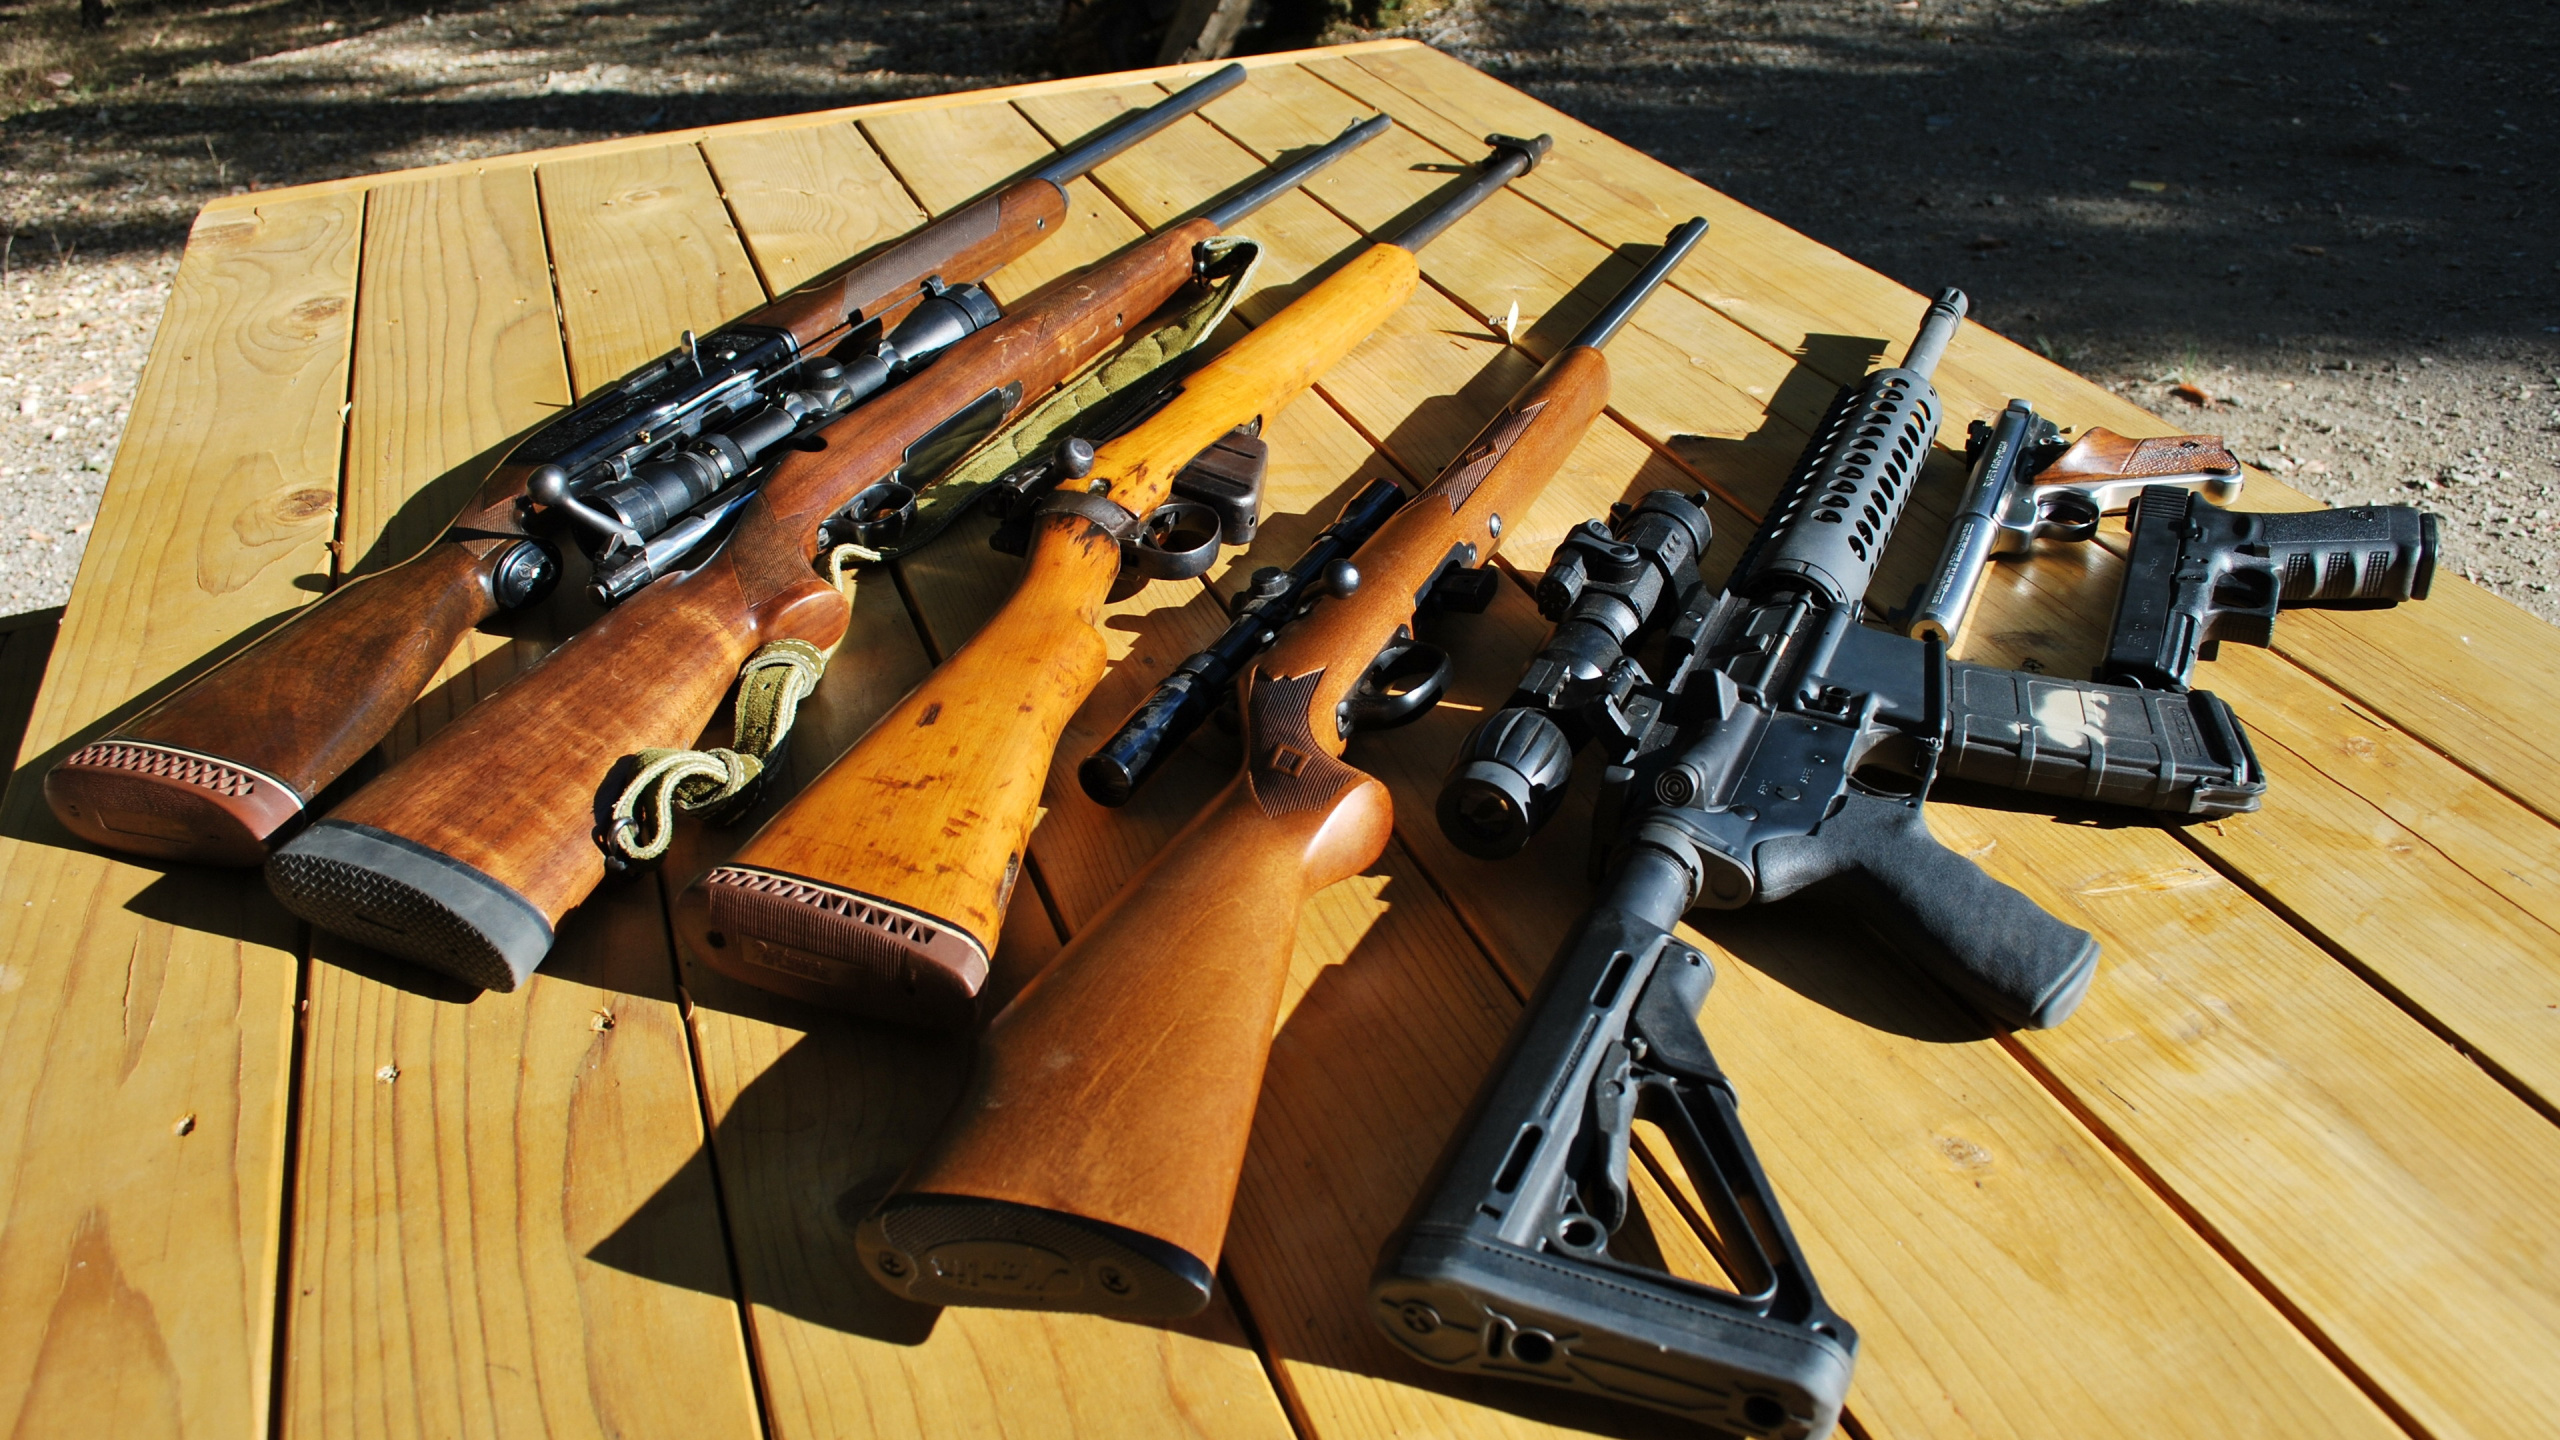 Feuerwaffe, Luftgewehr, Airsoft Gun, Gewehr, Zivilwaffe. Wallpaper in 2560x1440 Resolution